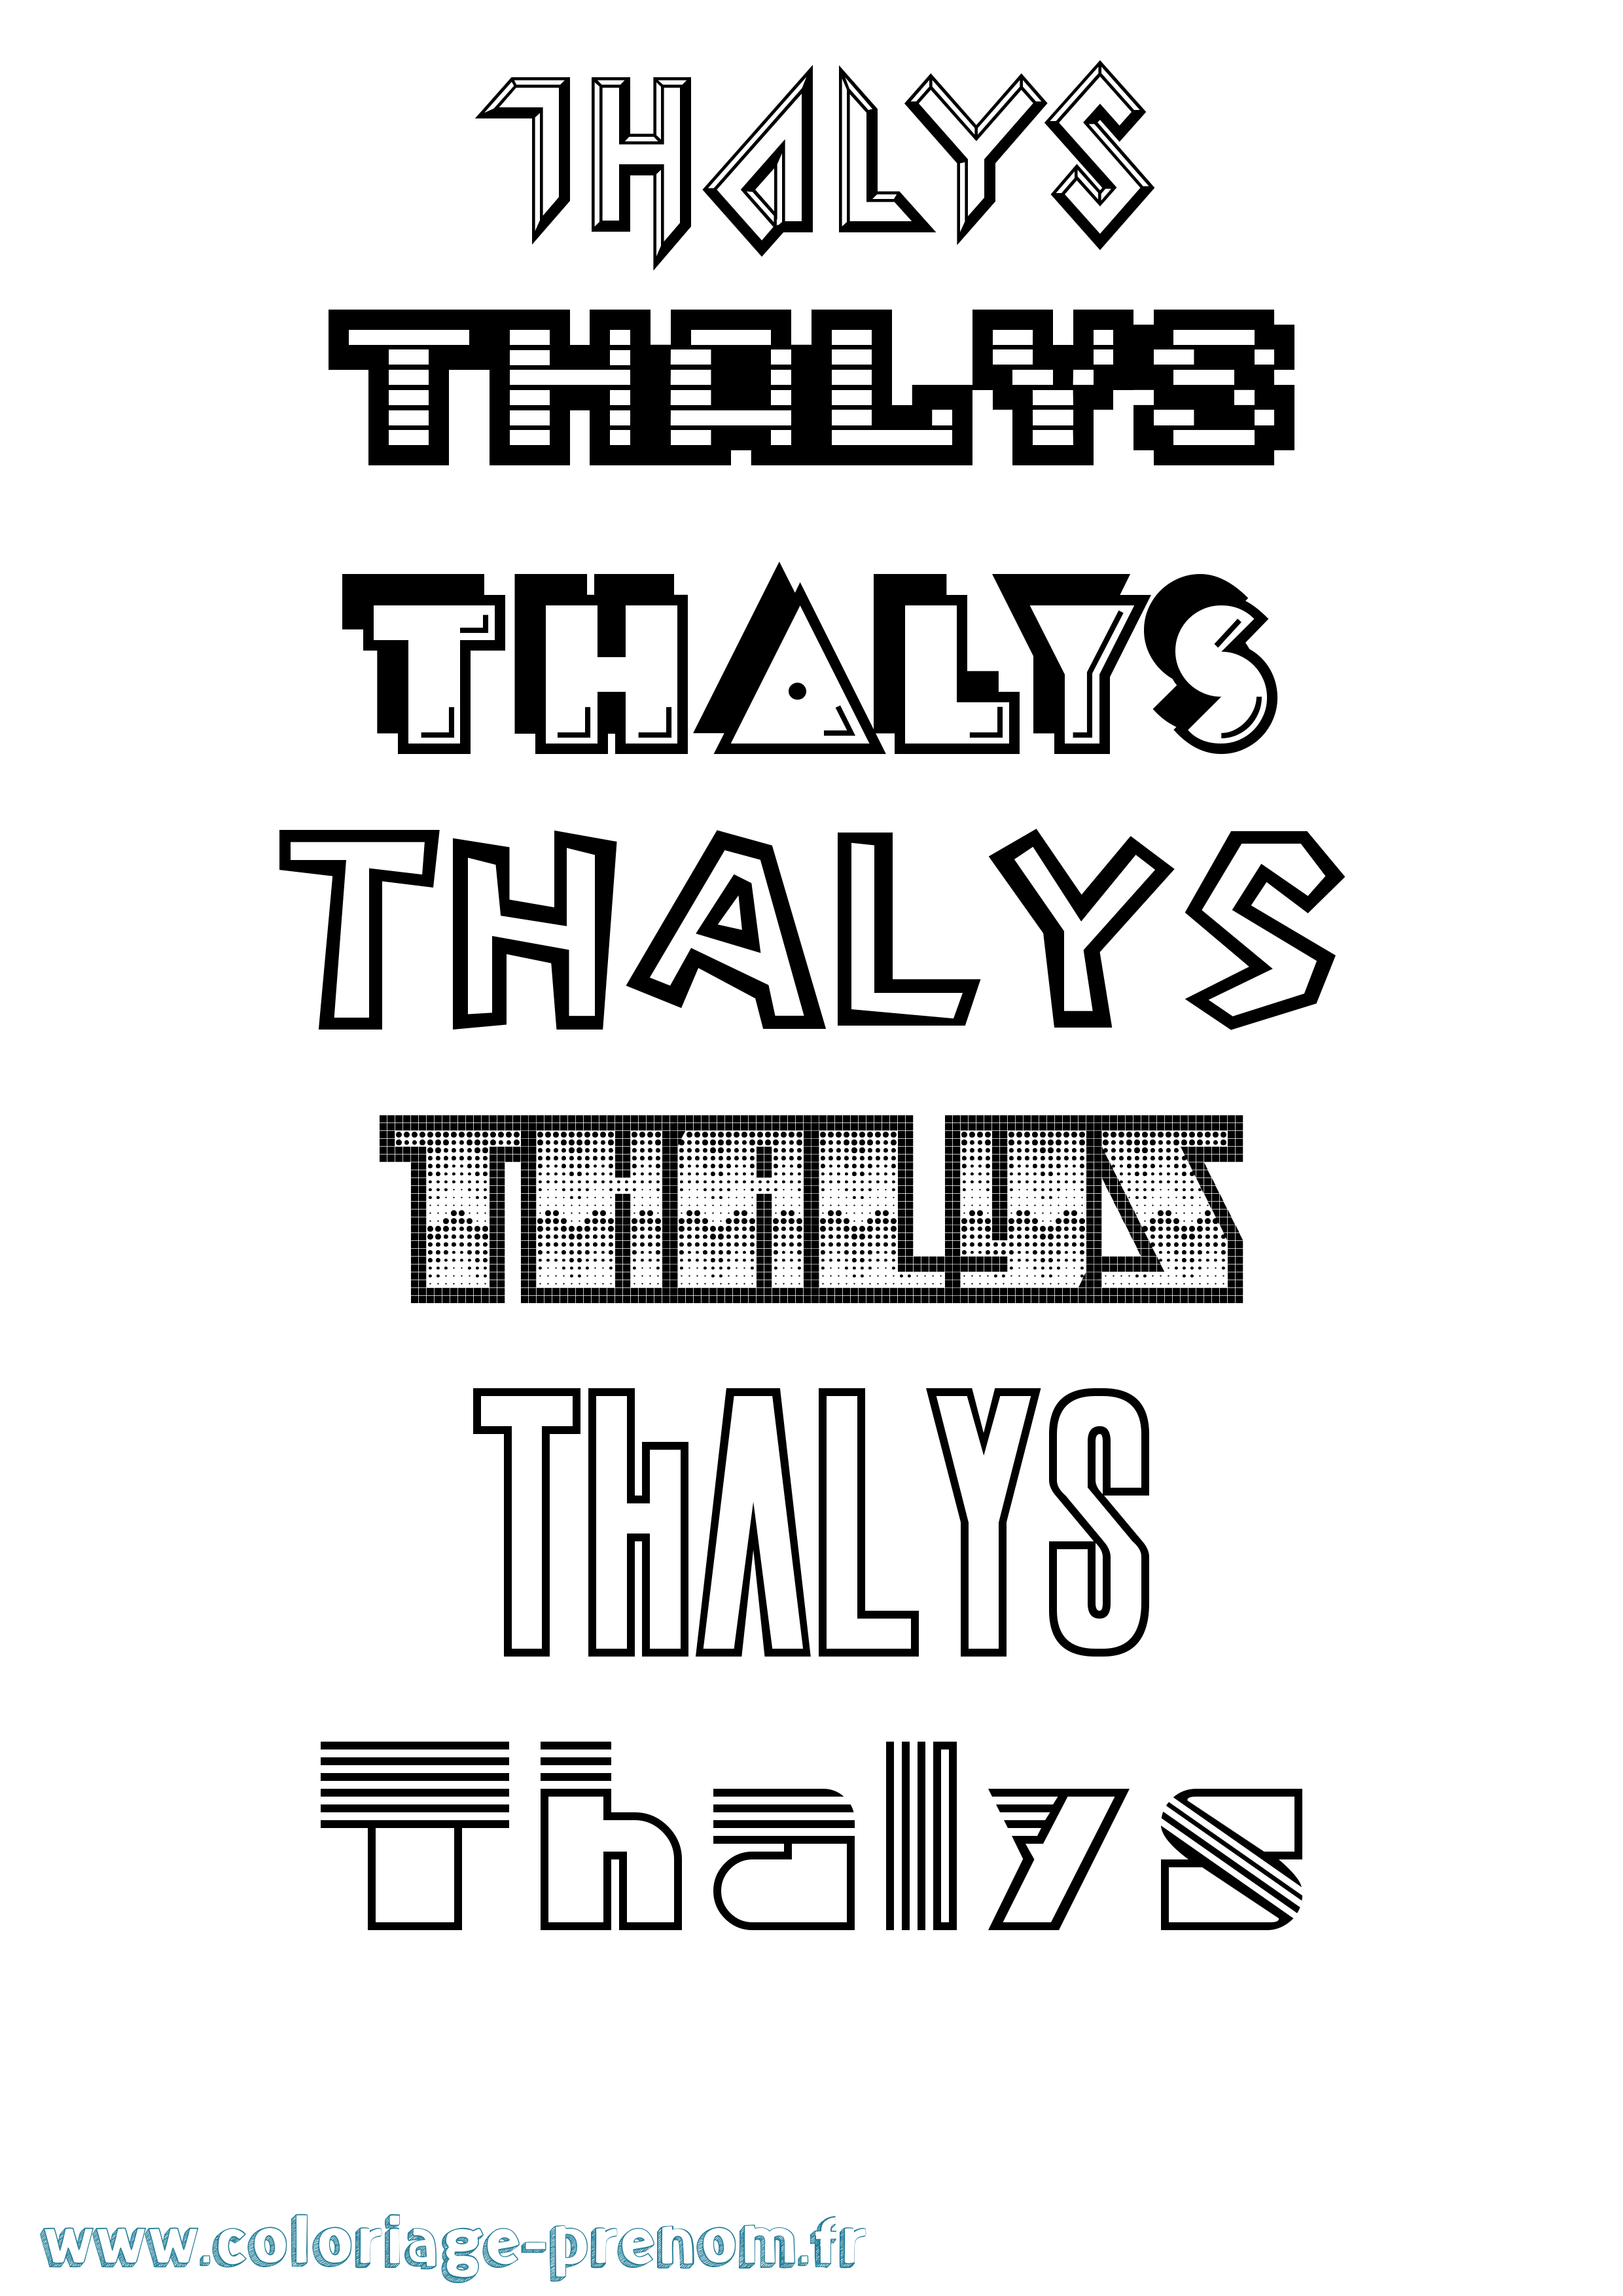 Coloriage prénom Thalys Jeux Vidéos